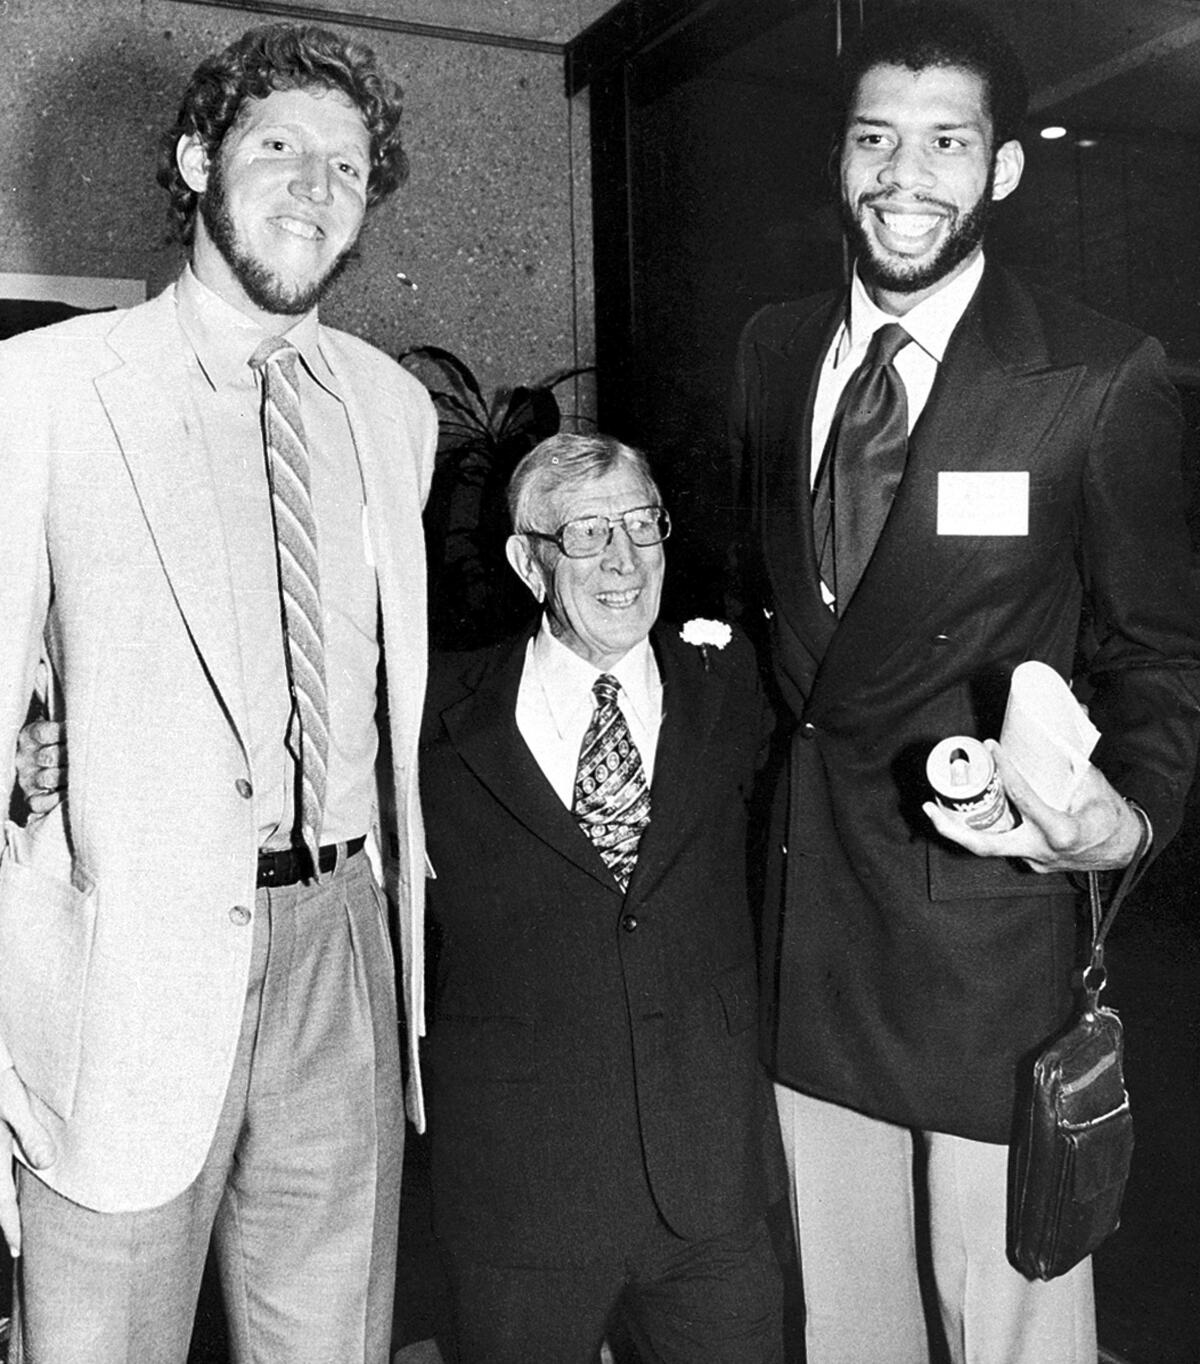 加州大学洛杉矶分校 (UCLA) 前教练约翰·伍登 (John Wooden) 两侧是球星比尔·沃顿 (Bill Walton) 和卡里姆·阿卜杜勒·贾巴尔 (Kareem Abdul-Jabbar) 